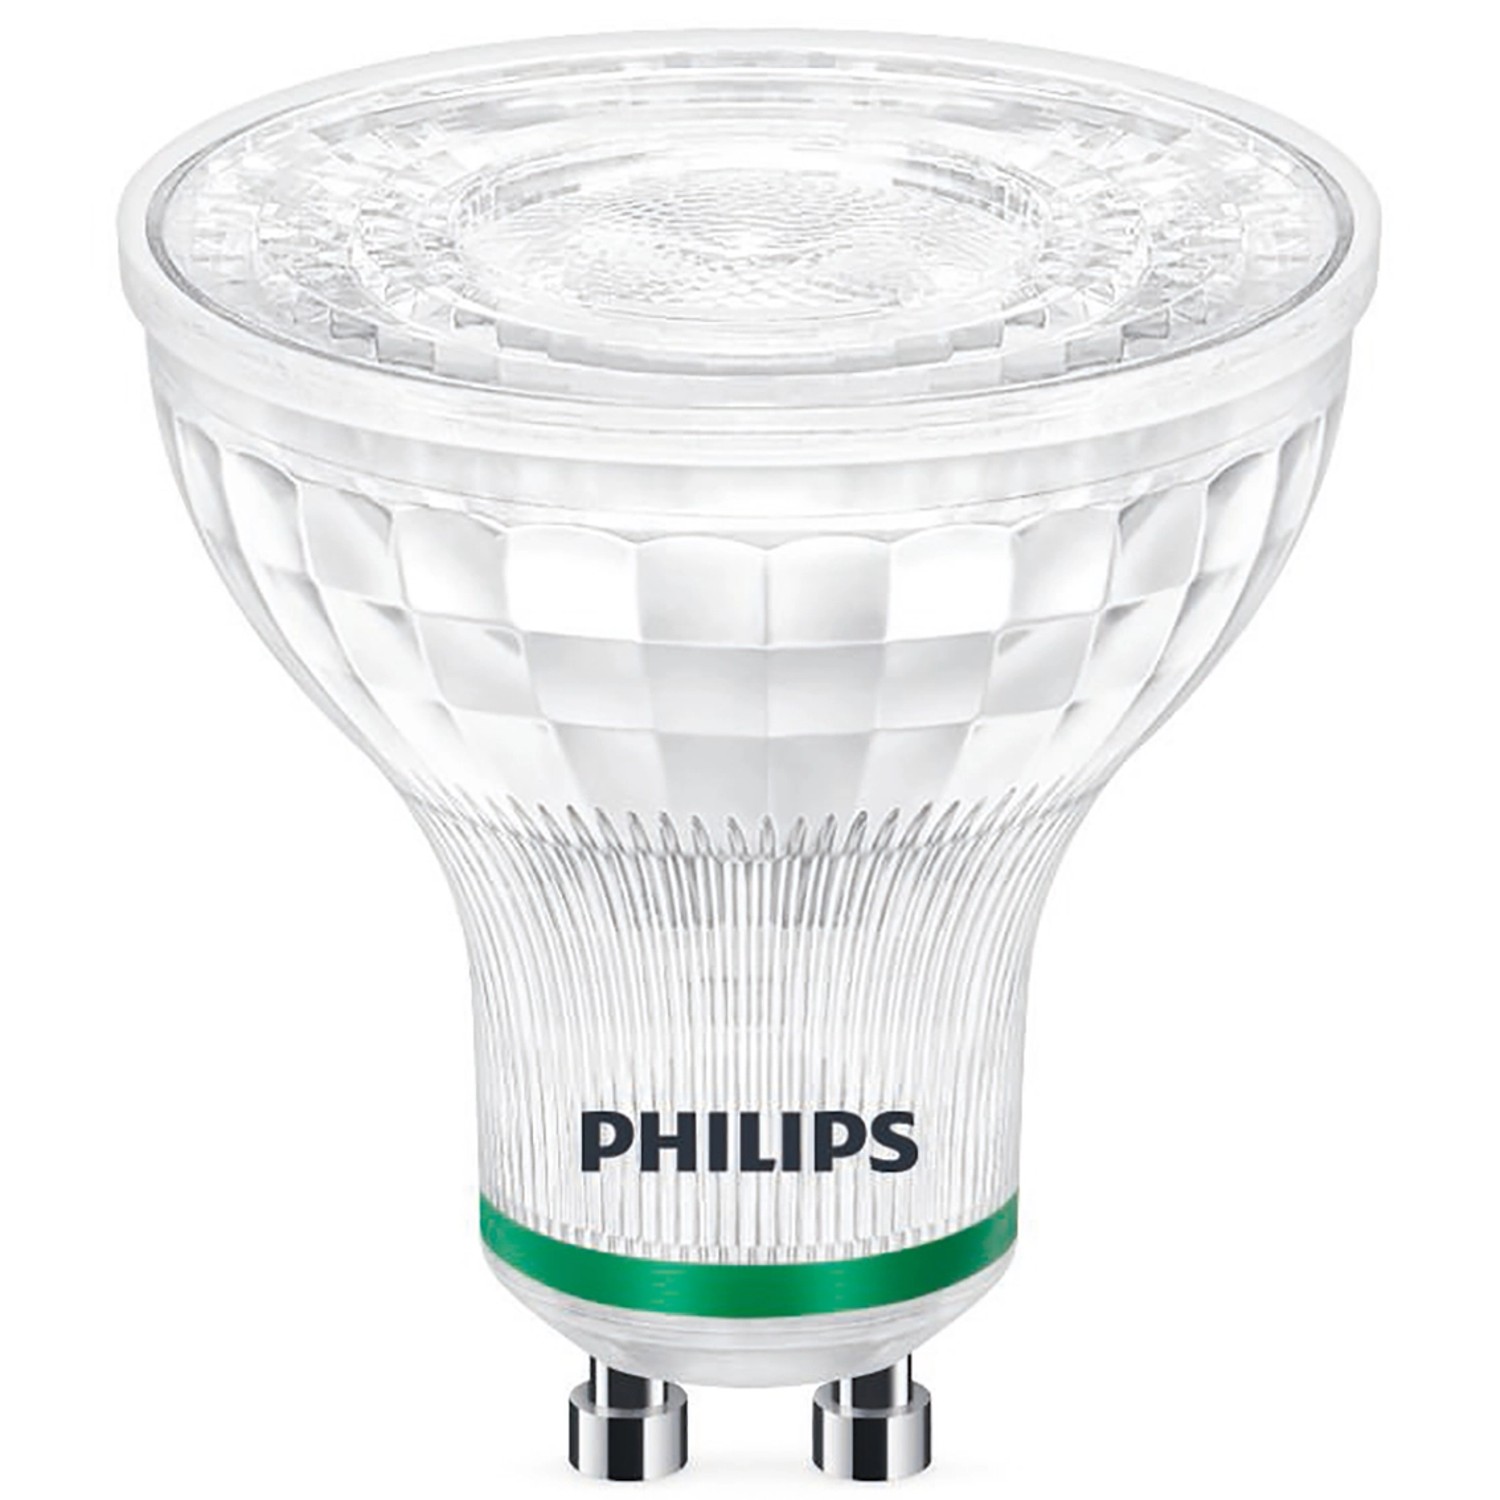 Philips LED-Leuchtmittel GU10 2,4 W Warmweiß 380 lm EEK: B 5,4 x 5 cm (H x Ø)